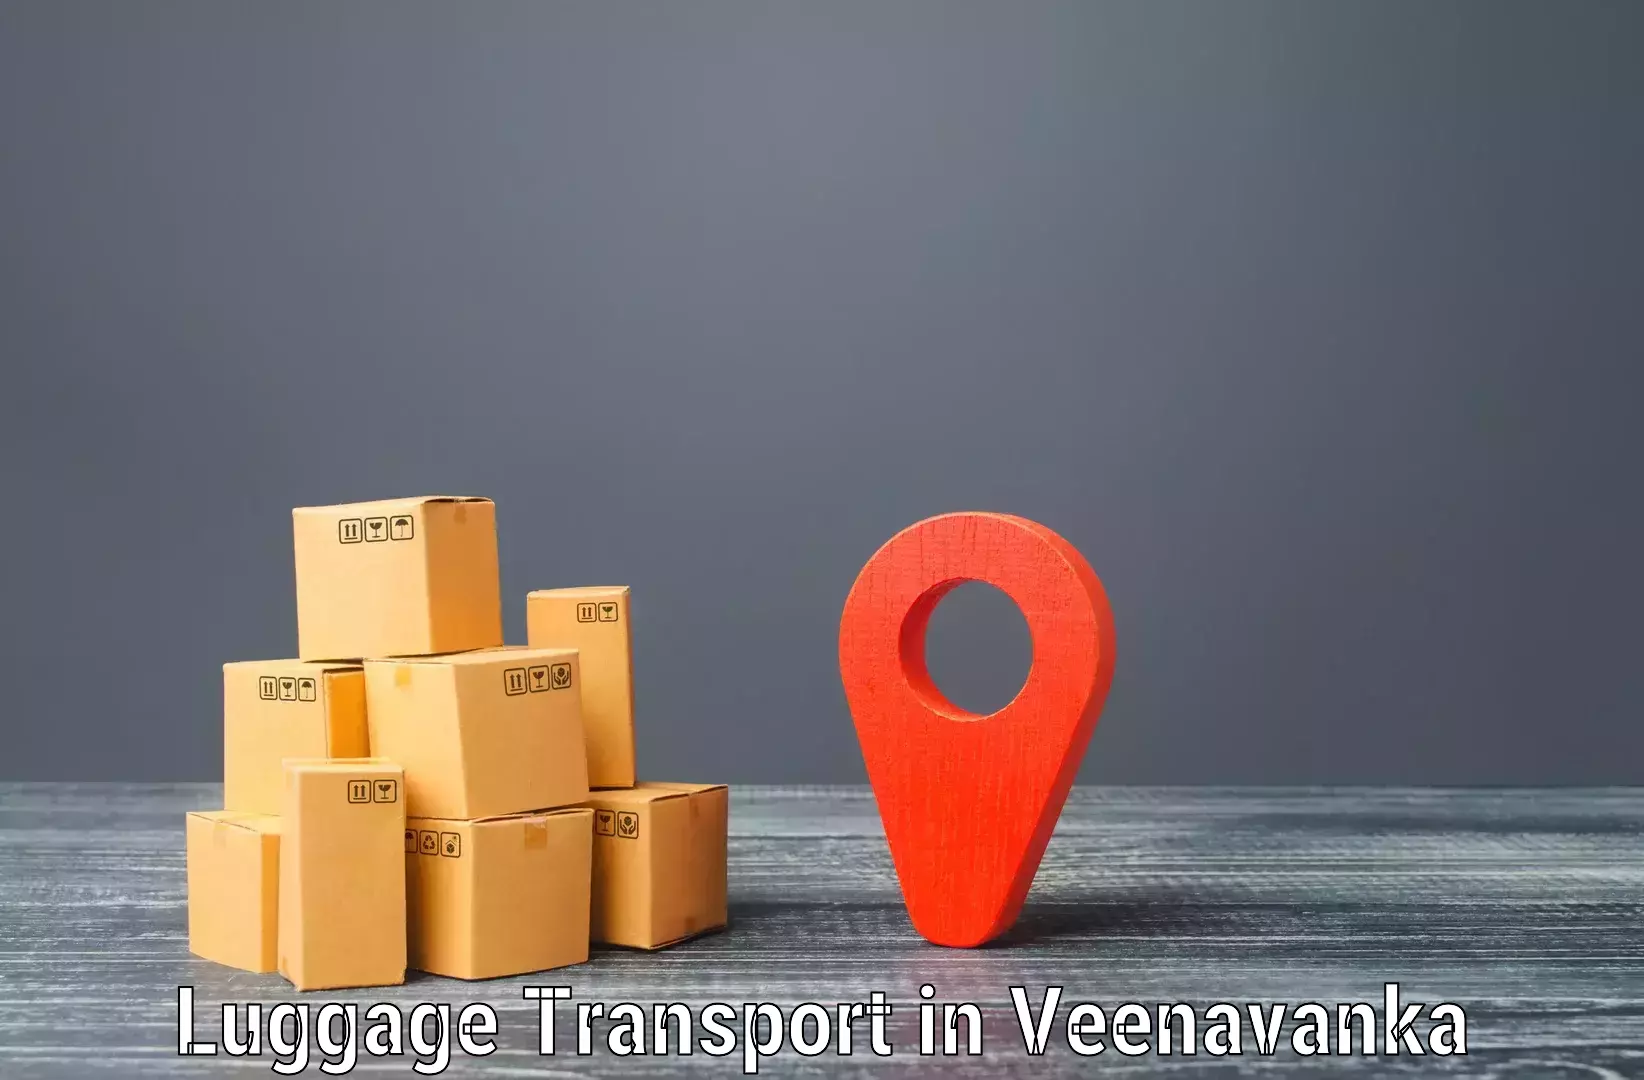 Luggage delivery network in Veenavanka